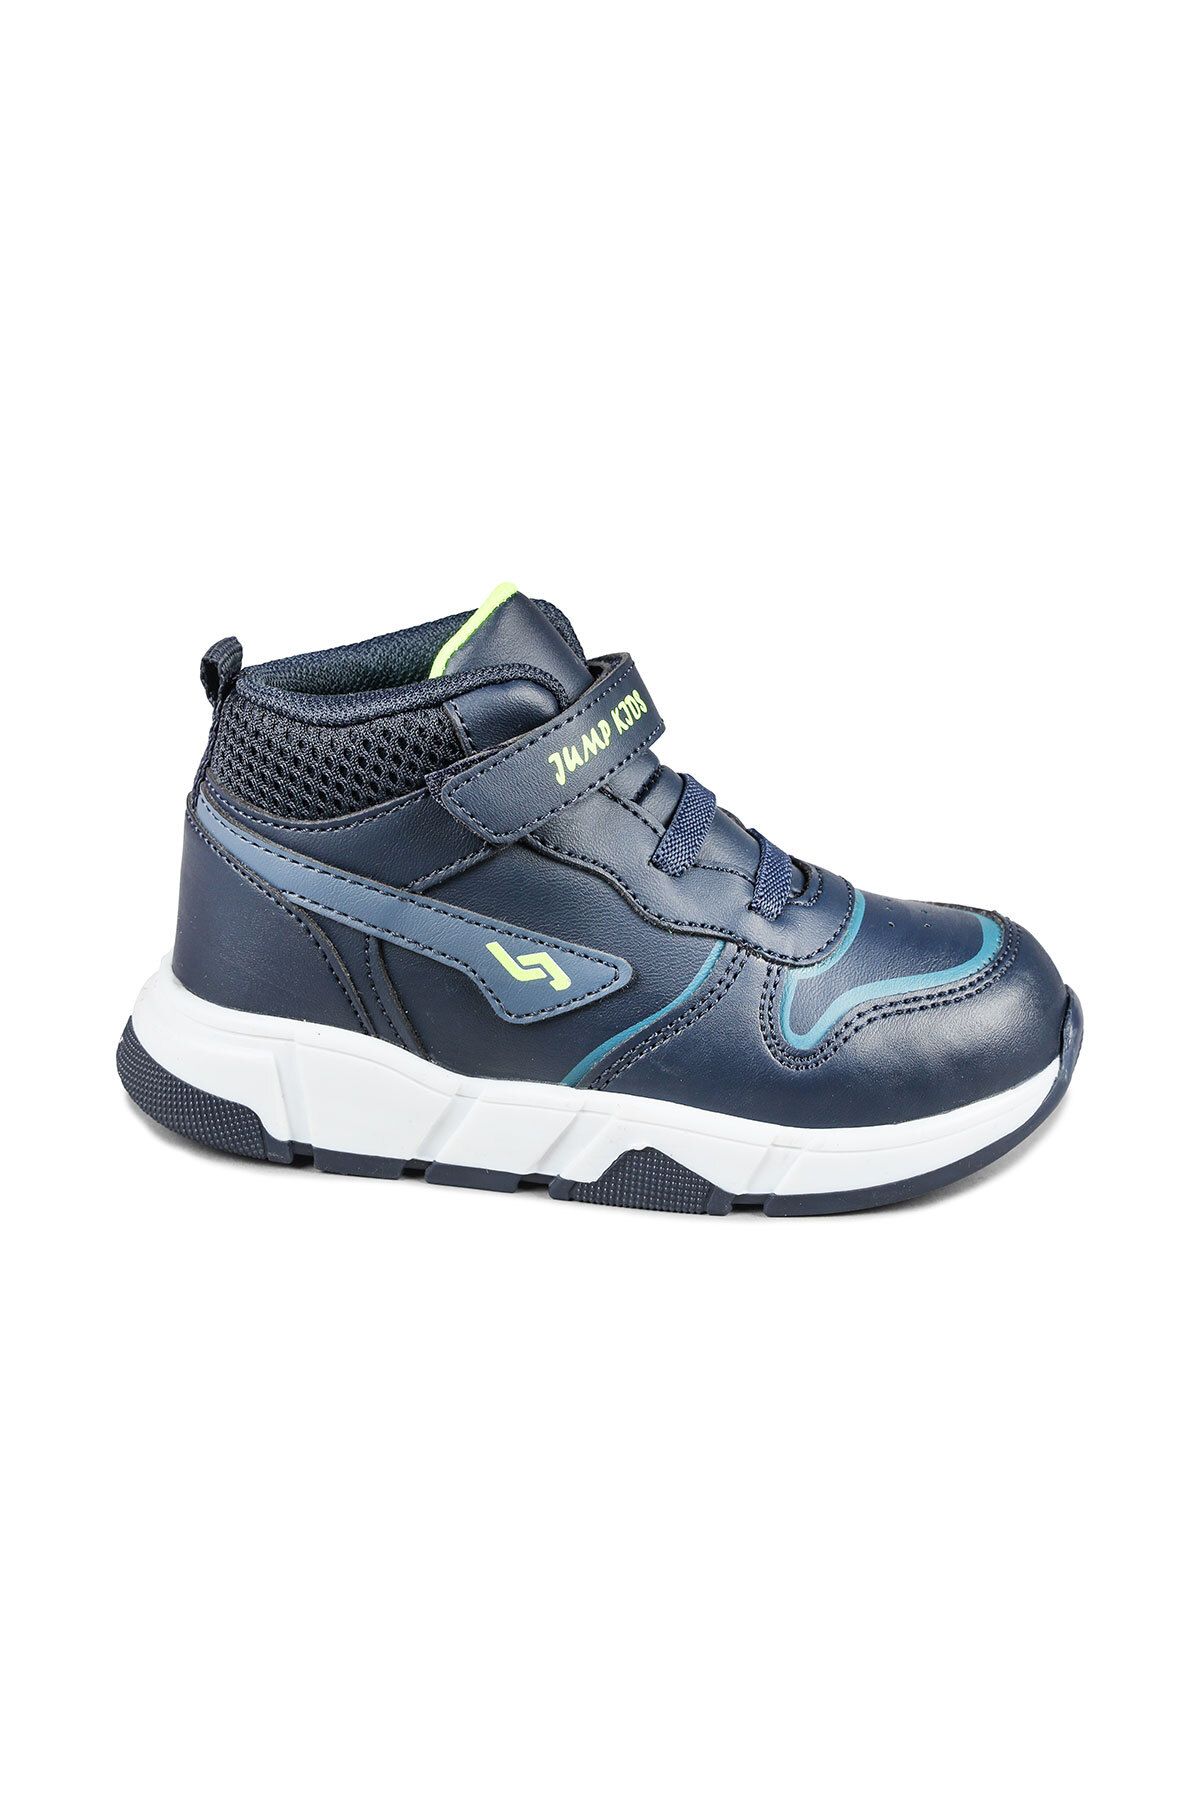 Jump 27824 Cırtlı Yüksek Bilekli Lacivert - Mavi Üniseks Çocuk Sneaker Günlük Spor Ayakkabı